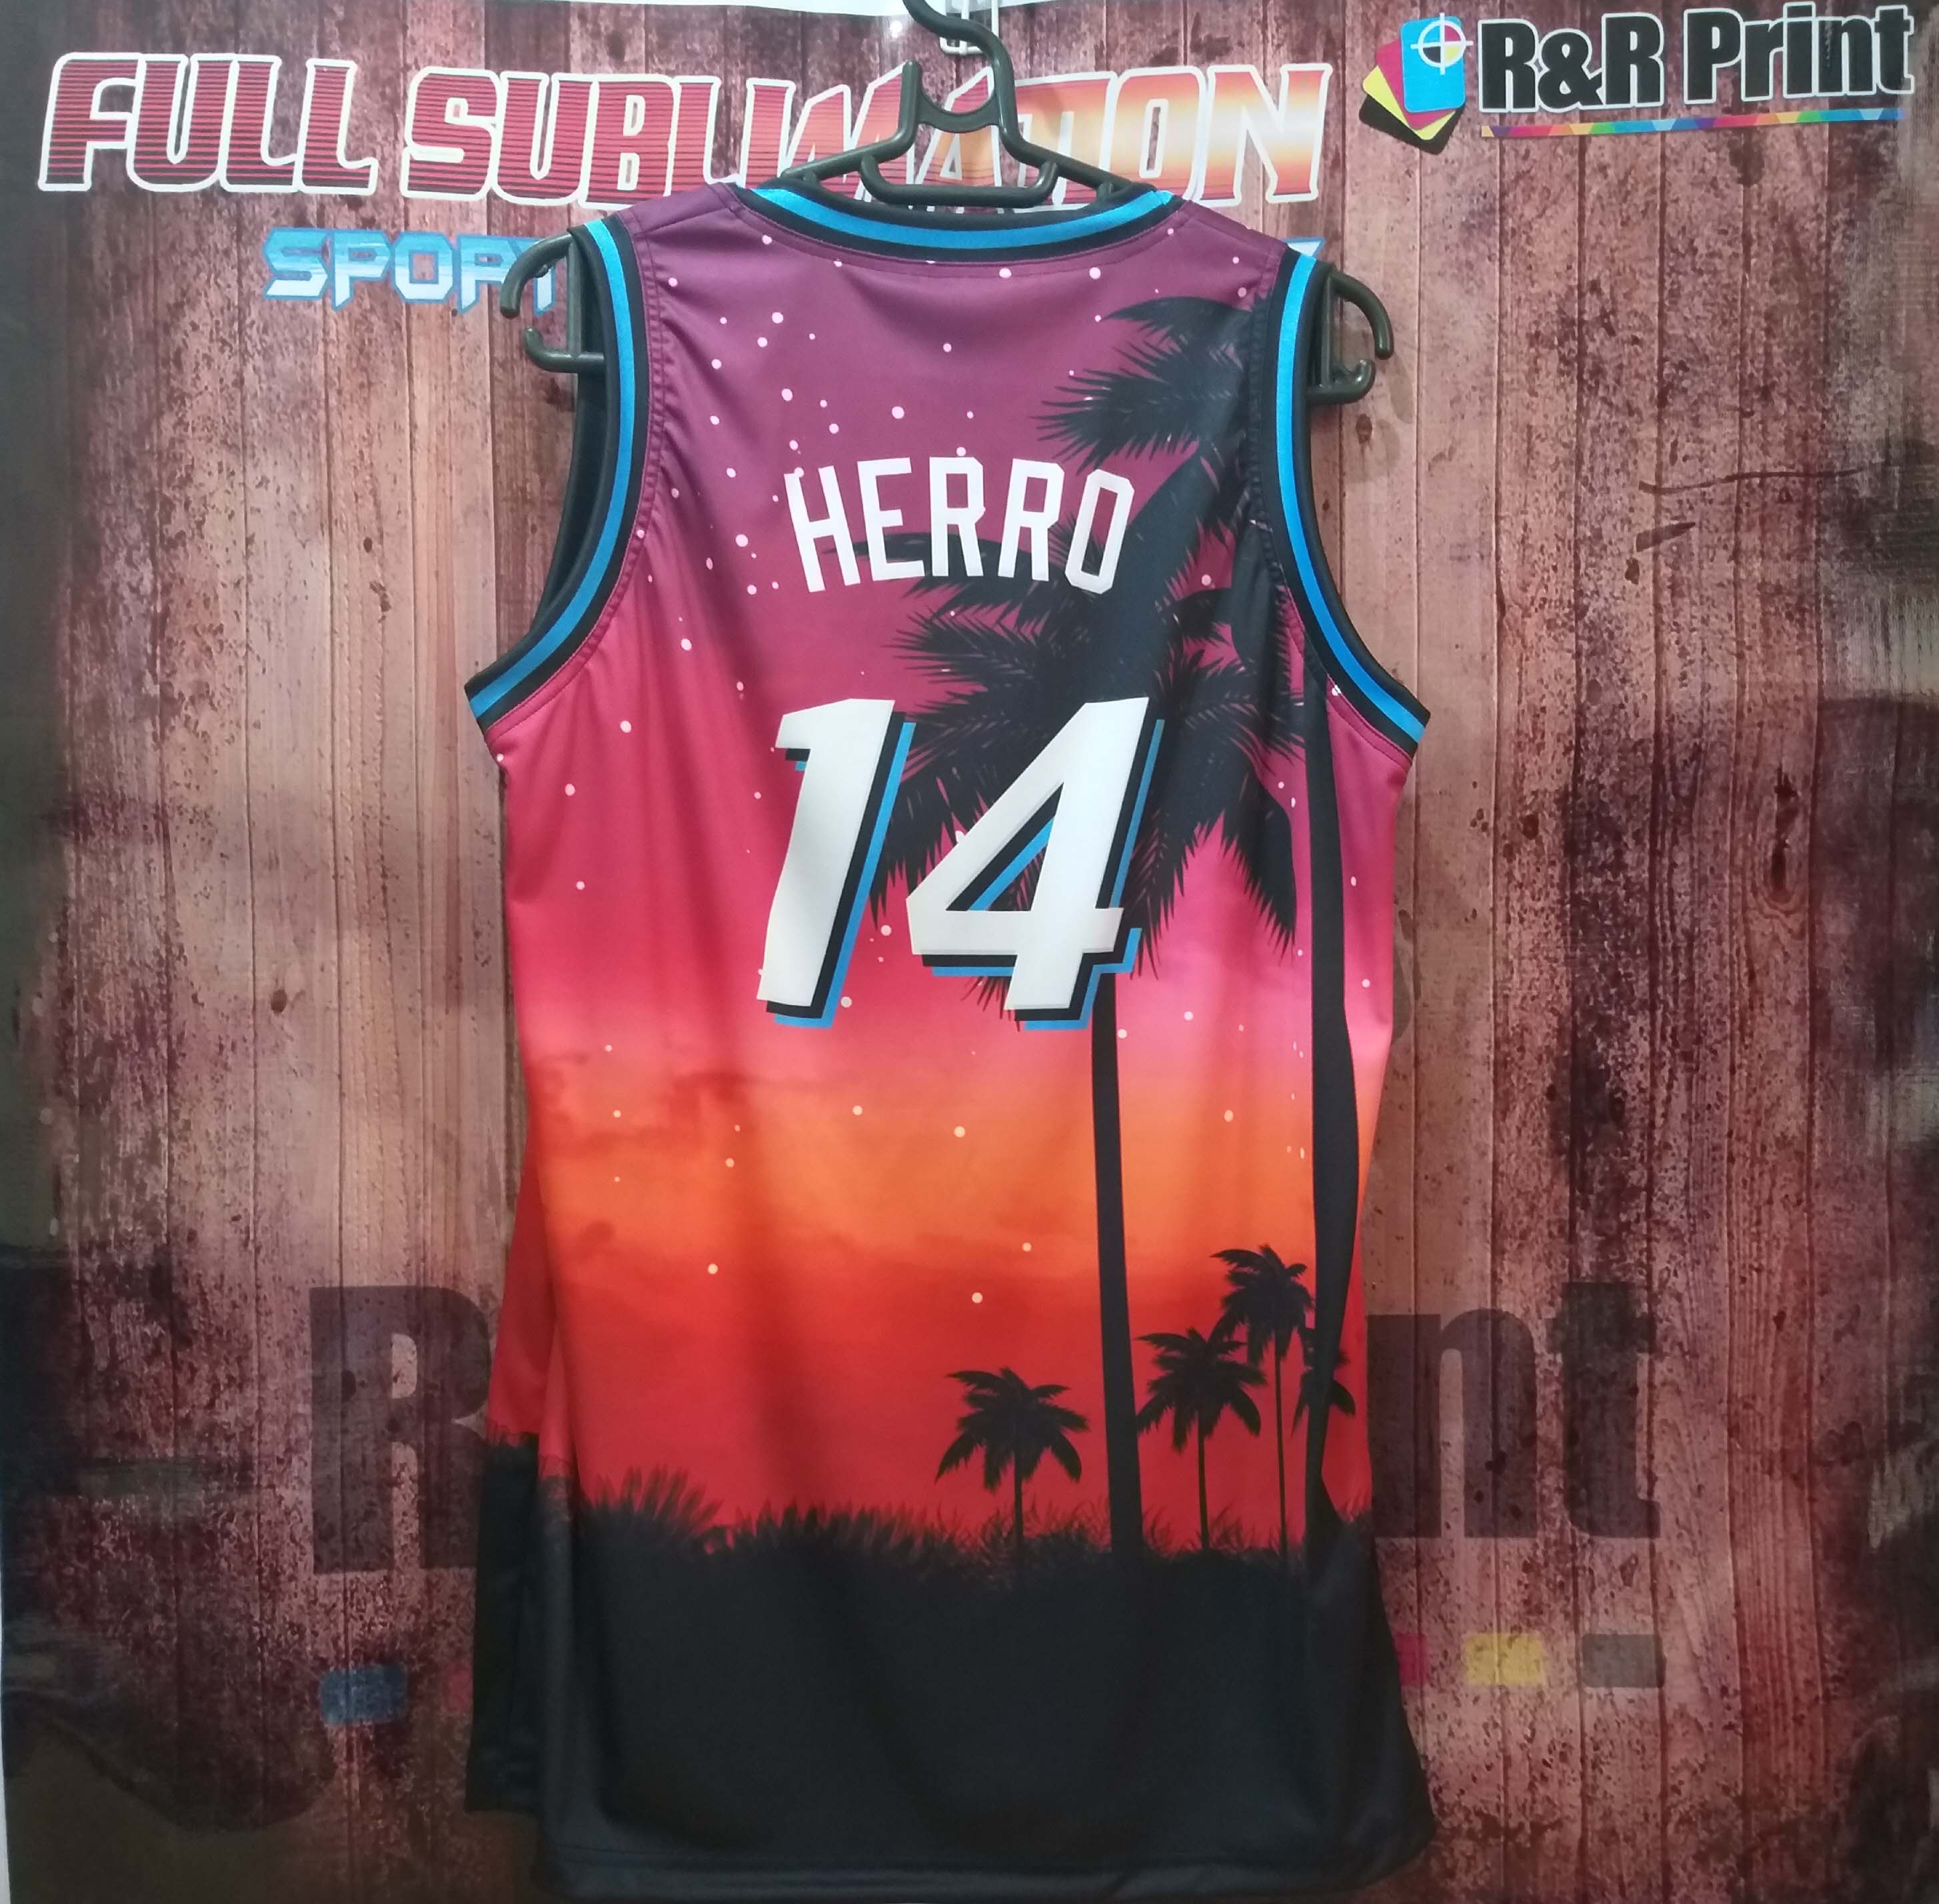 Tyler Herro Miami Heat City Jersey #14 – Nonstop Jersey